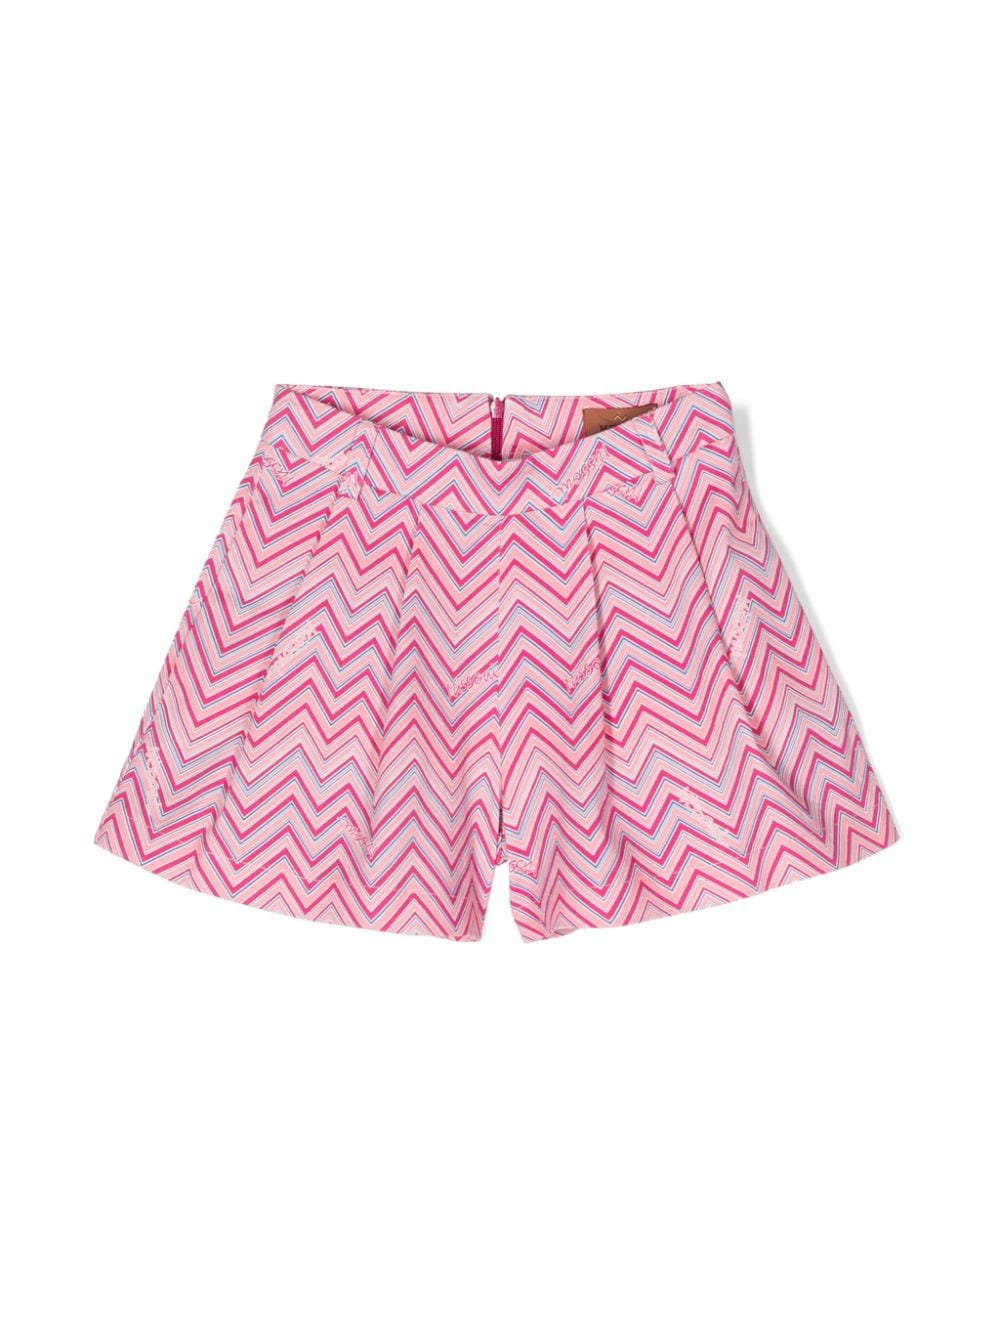 Pink Bermuda shorts for girls